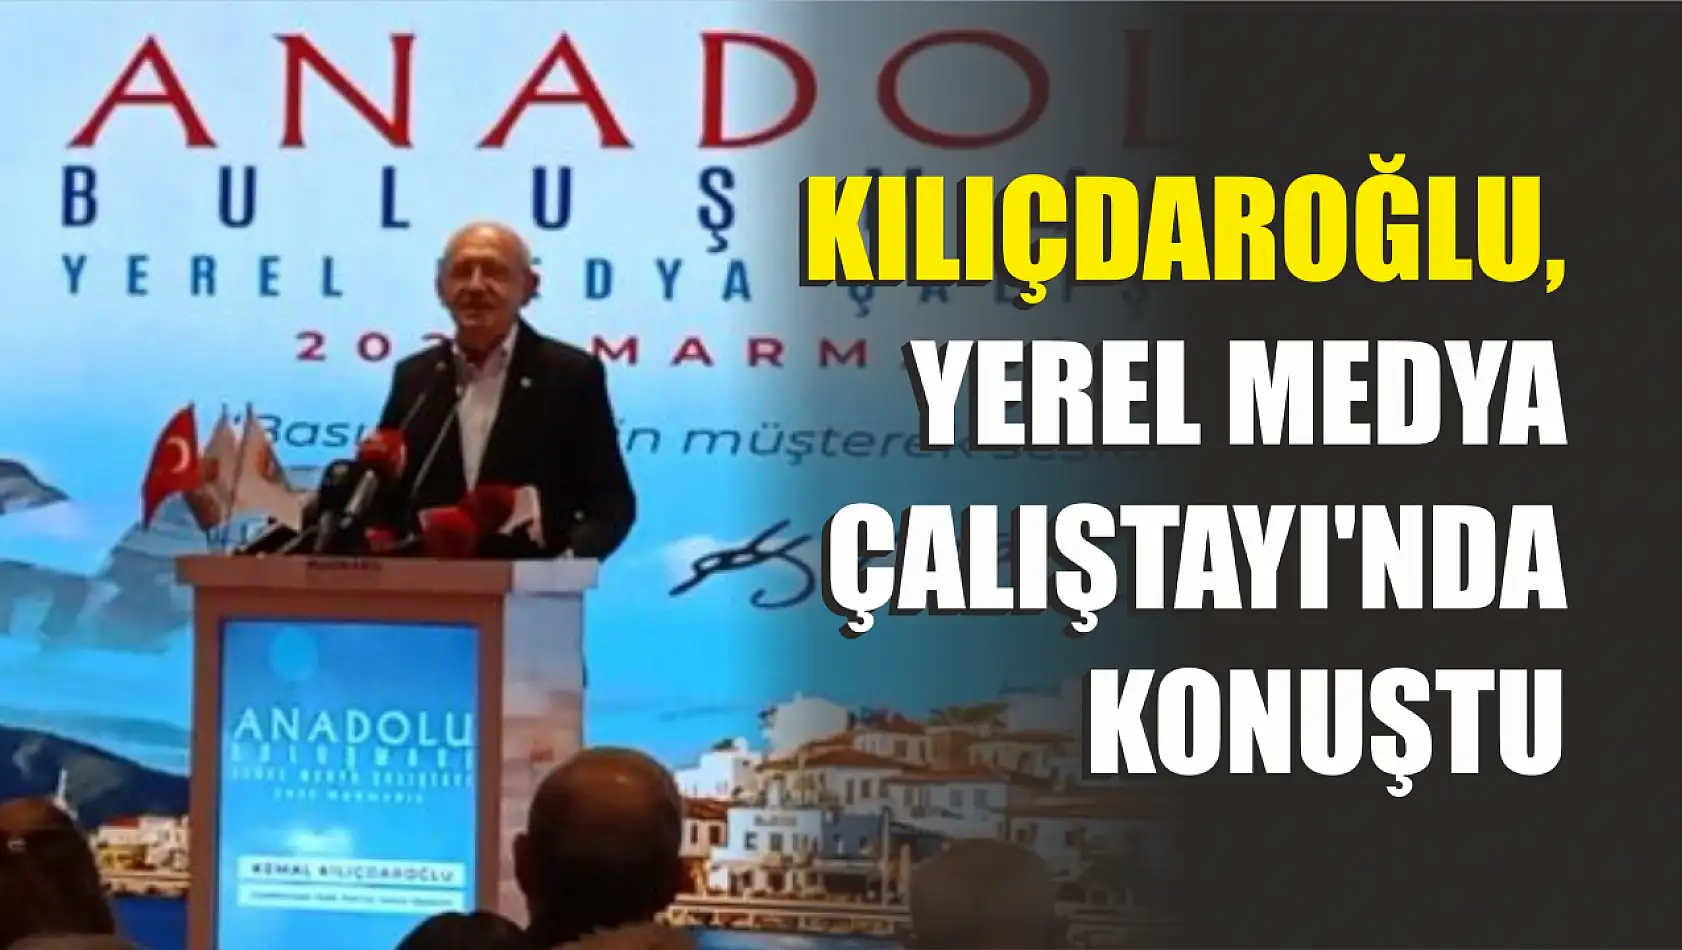 Kılıçdaroğlu, Yerel Medya Çalıştayı'nda Konuştu